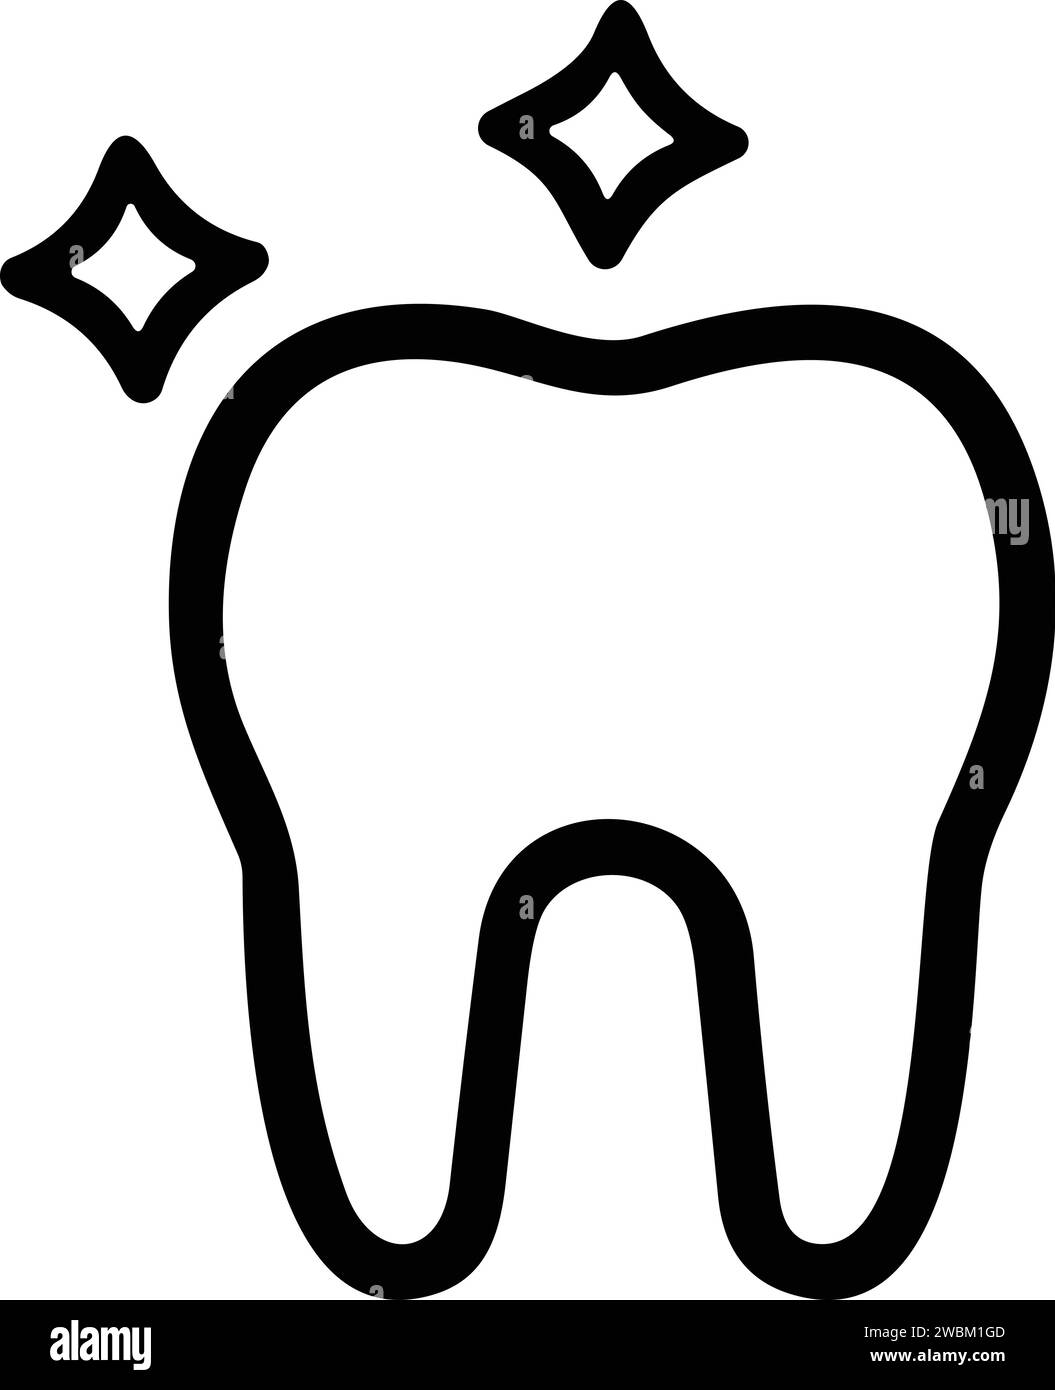 Icona dentale. Dentista, cura, malattia, sbiancamento dei denti, rimozione, rottura, canale radicolare, riempimento dei denti e denti saggezza. Illustrazione vettoriale Illustrazione Vettoriale